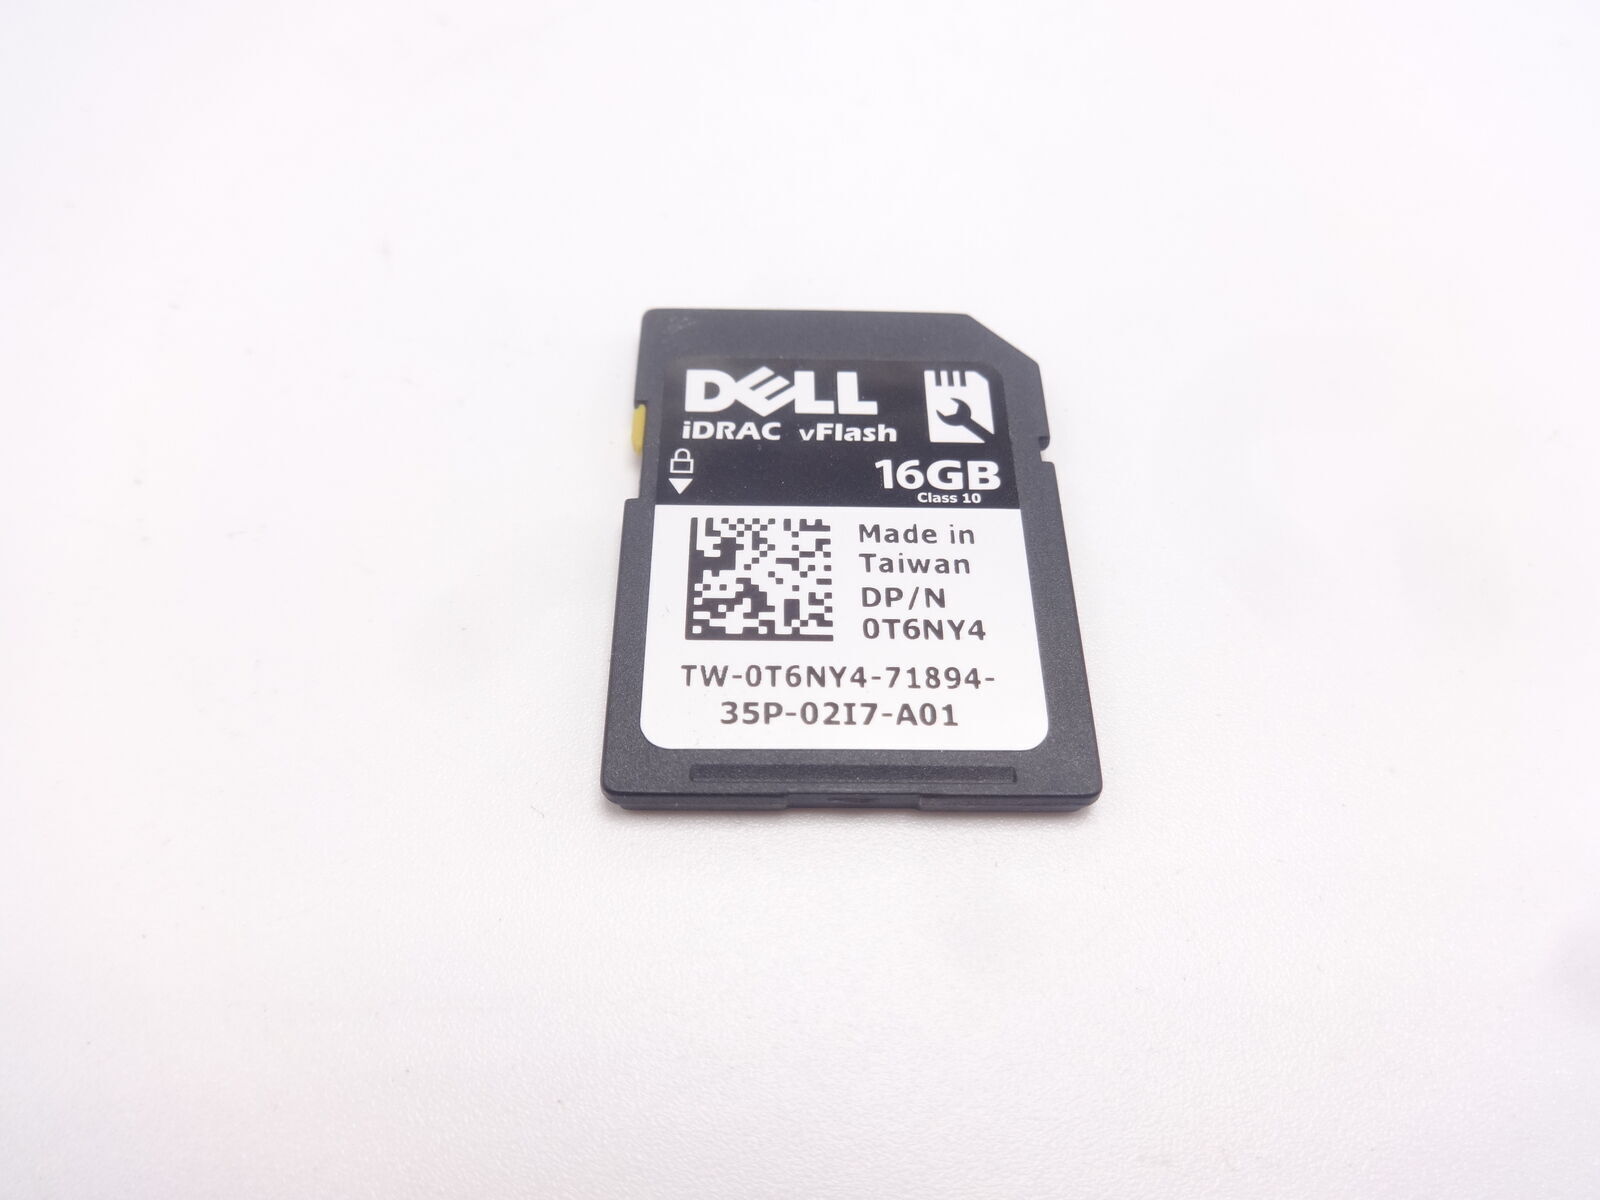 Genuine Dell 16GB iDRAC vFlash Class 10 SD Card 0T6NY4 037D9D 06F26K